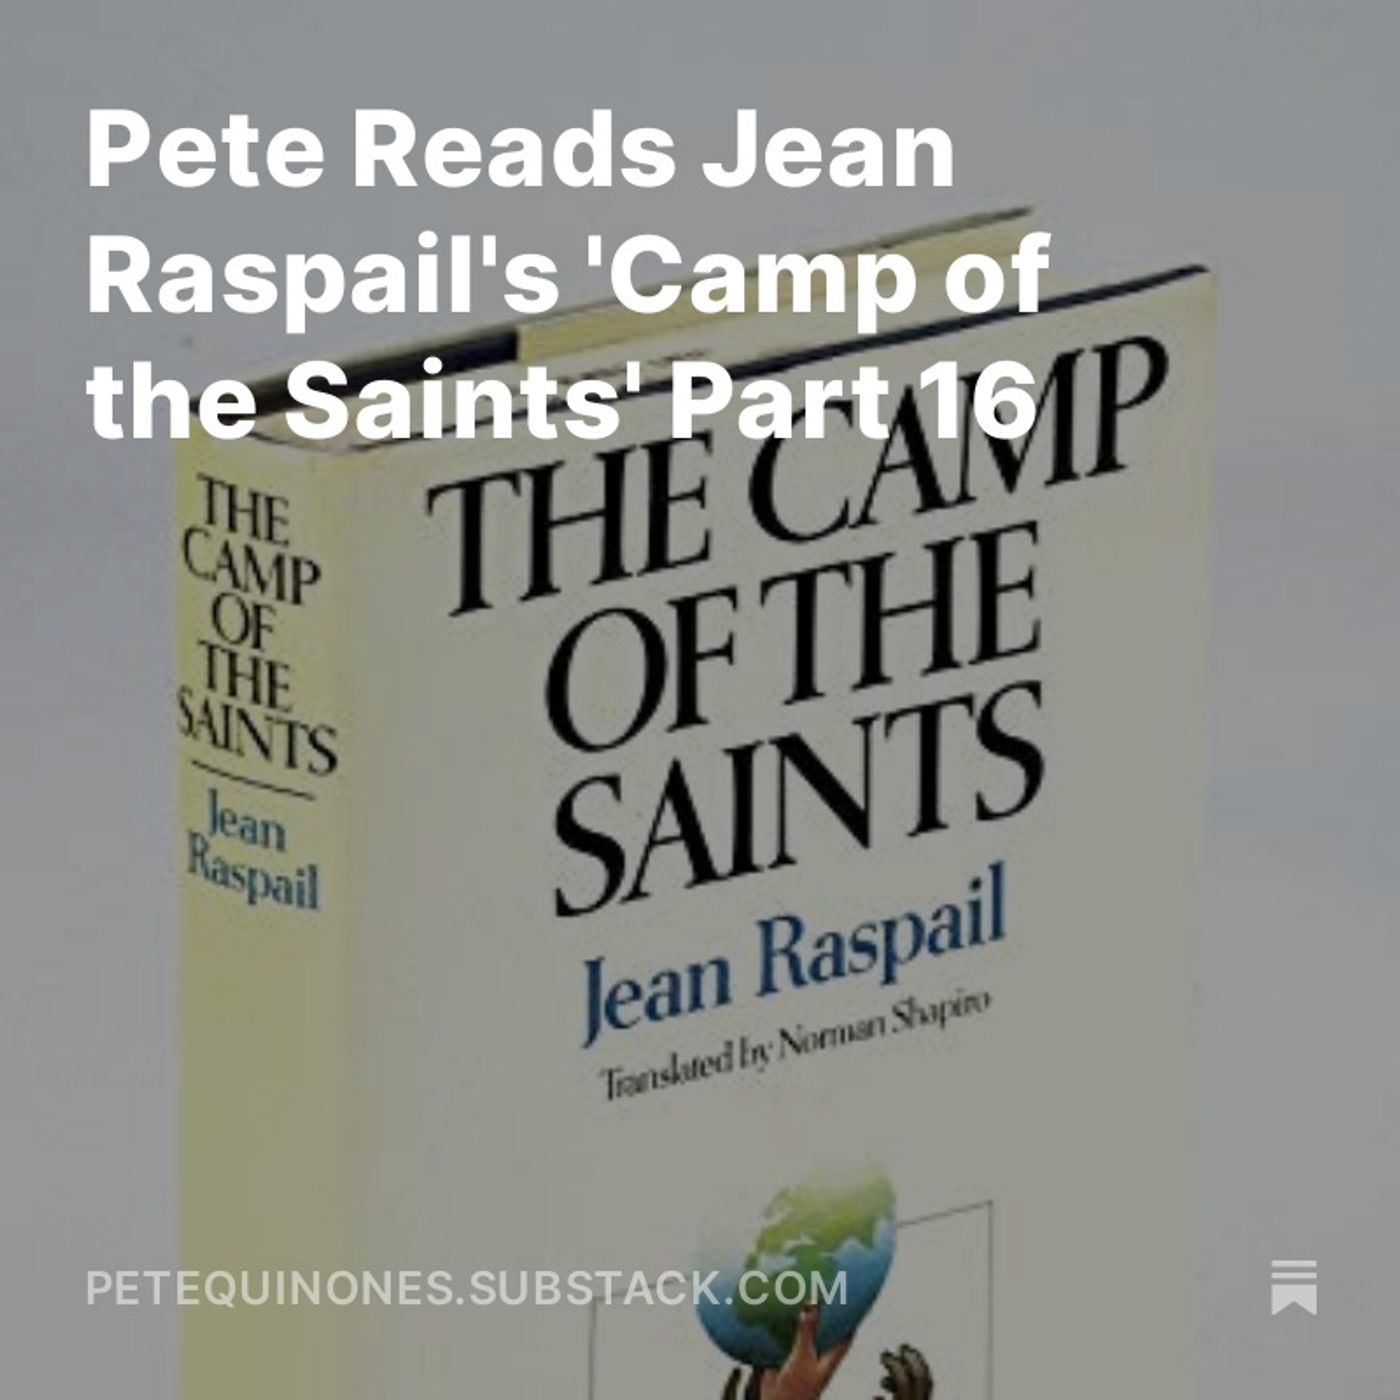 Pete Reads Jean Raspail's 'Camp of the Saints' Part 16